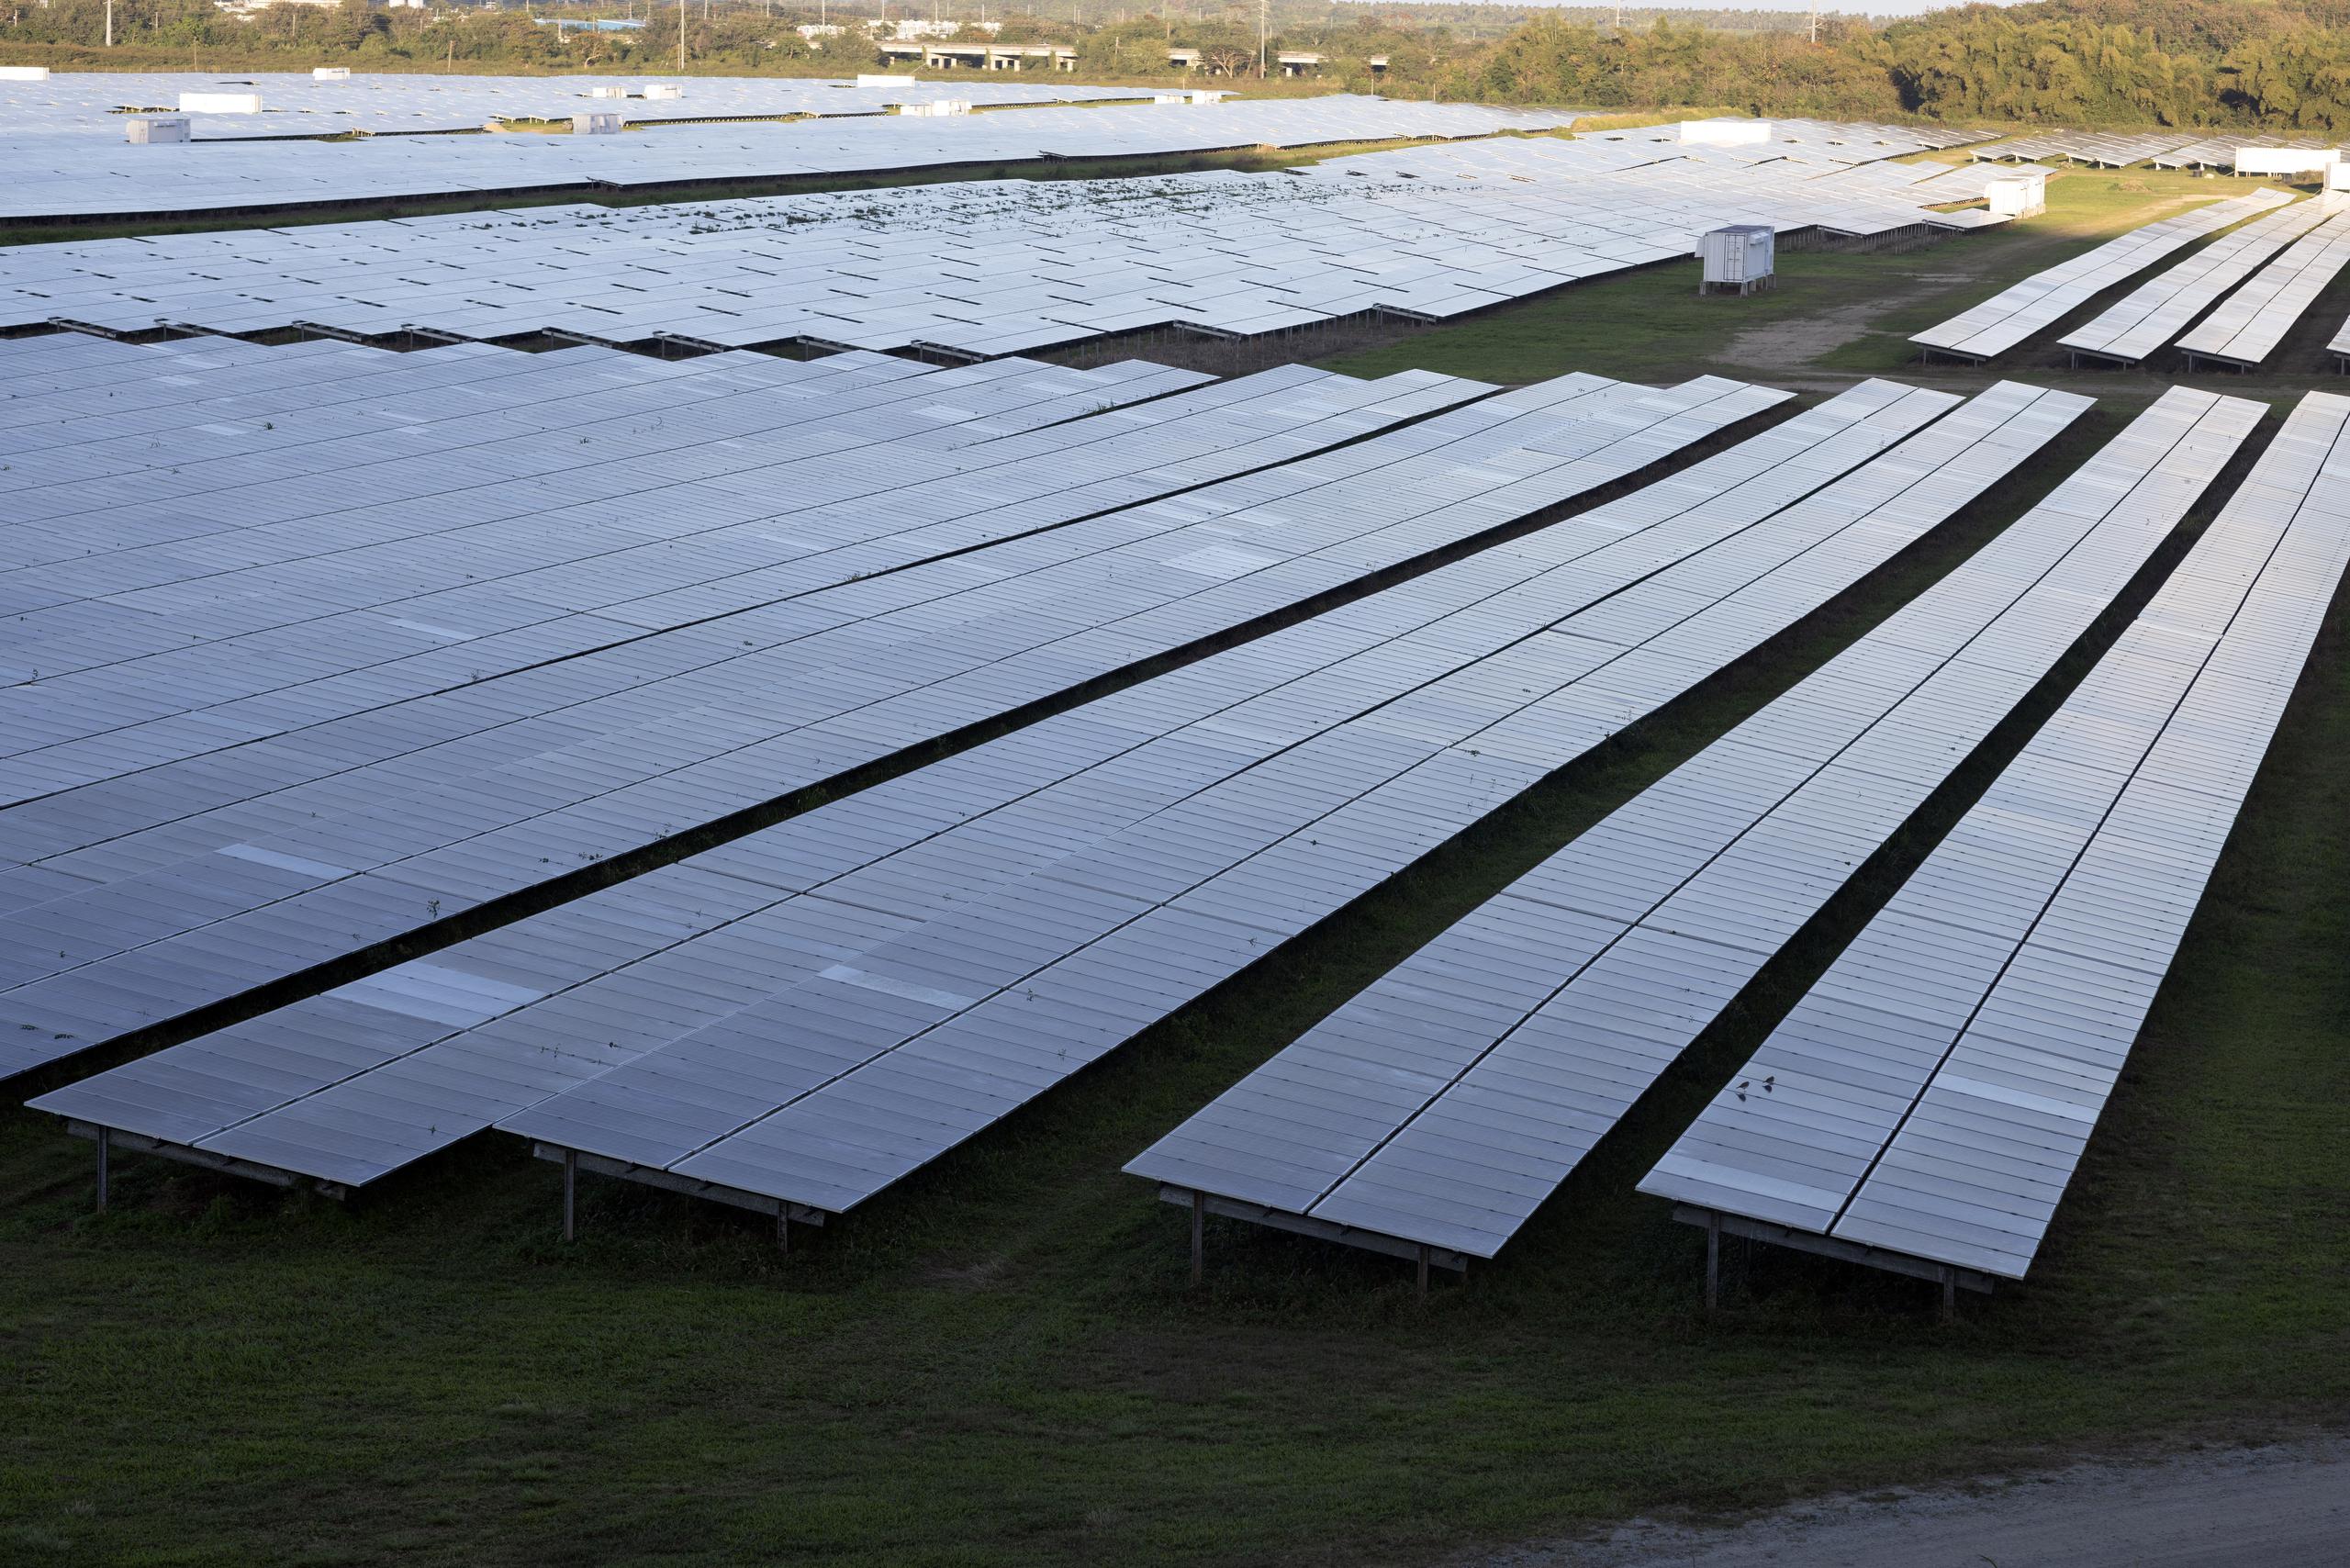 Vista parcial  de paneles solares de Humacao Solar Proyect, donde una vez fue una finca agrícola. 

FOTO POR:  
xavier.araujo@gfrmedia.com
Xavier Araujo / GFR Media